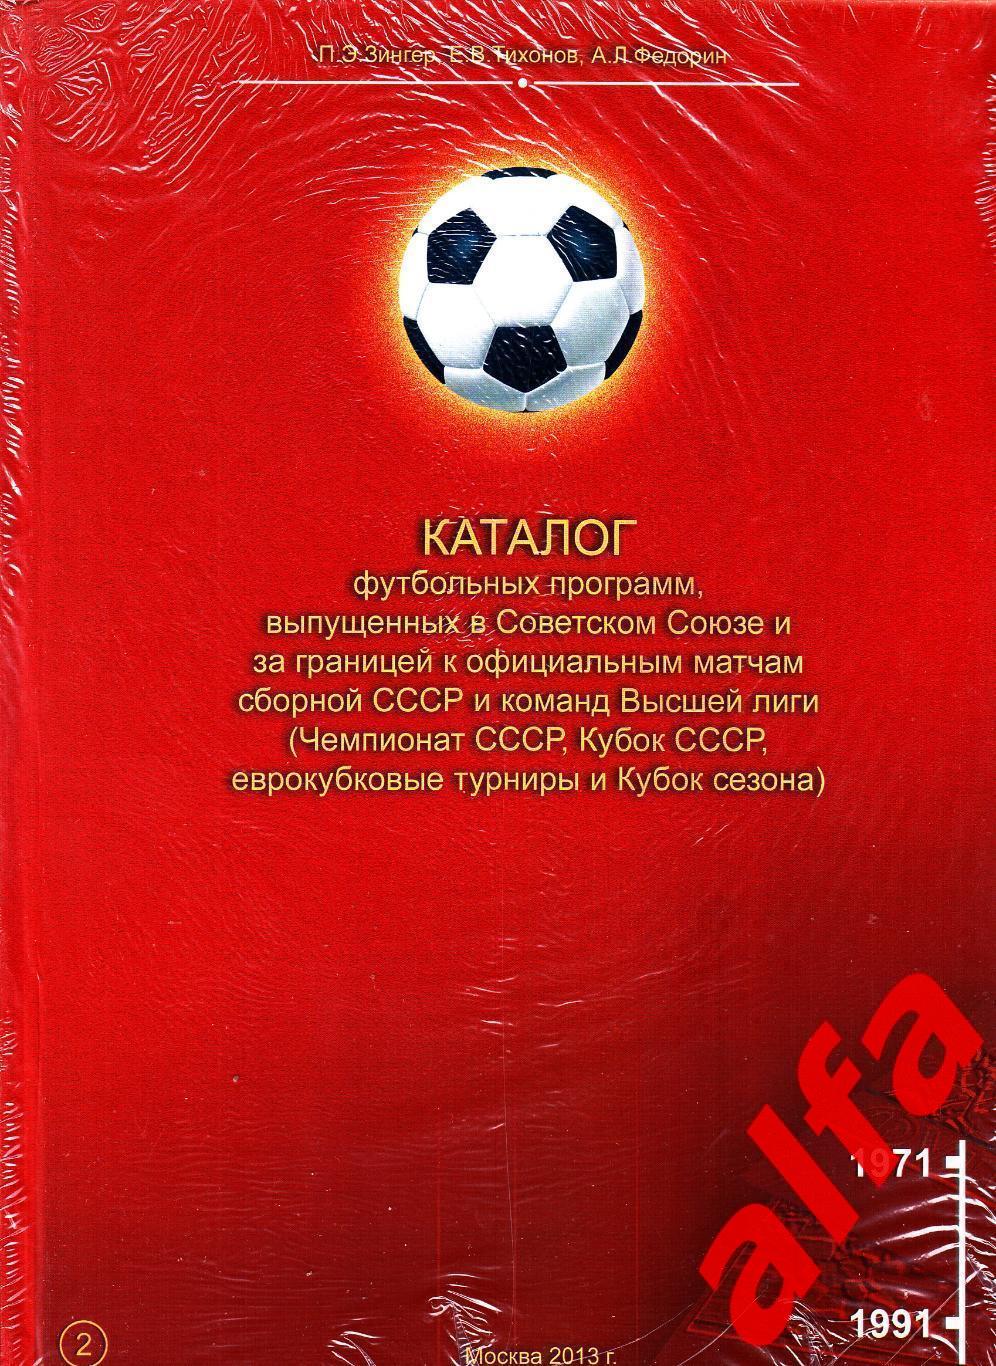 Каталог футбольных программ (Россия-СССР). Т.2 1971-1991